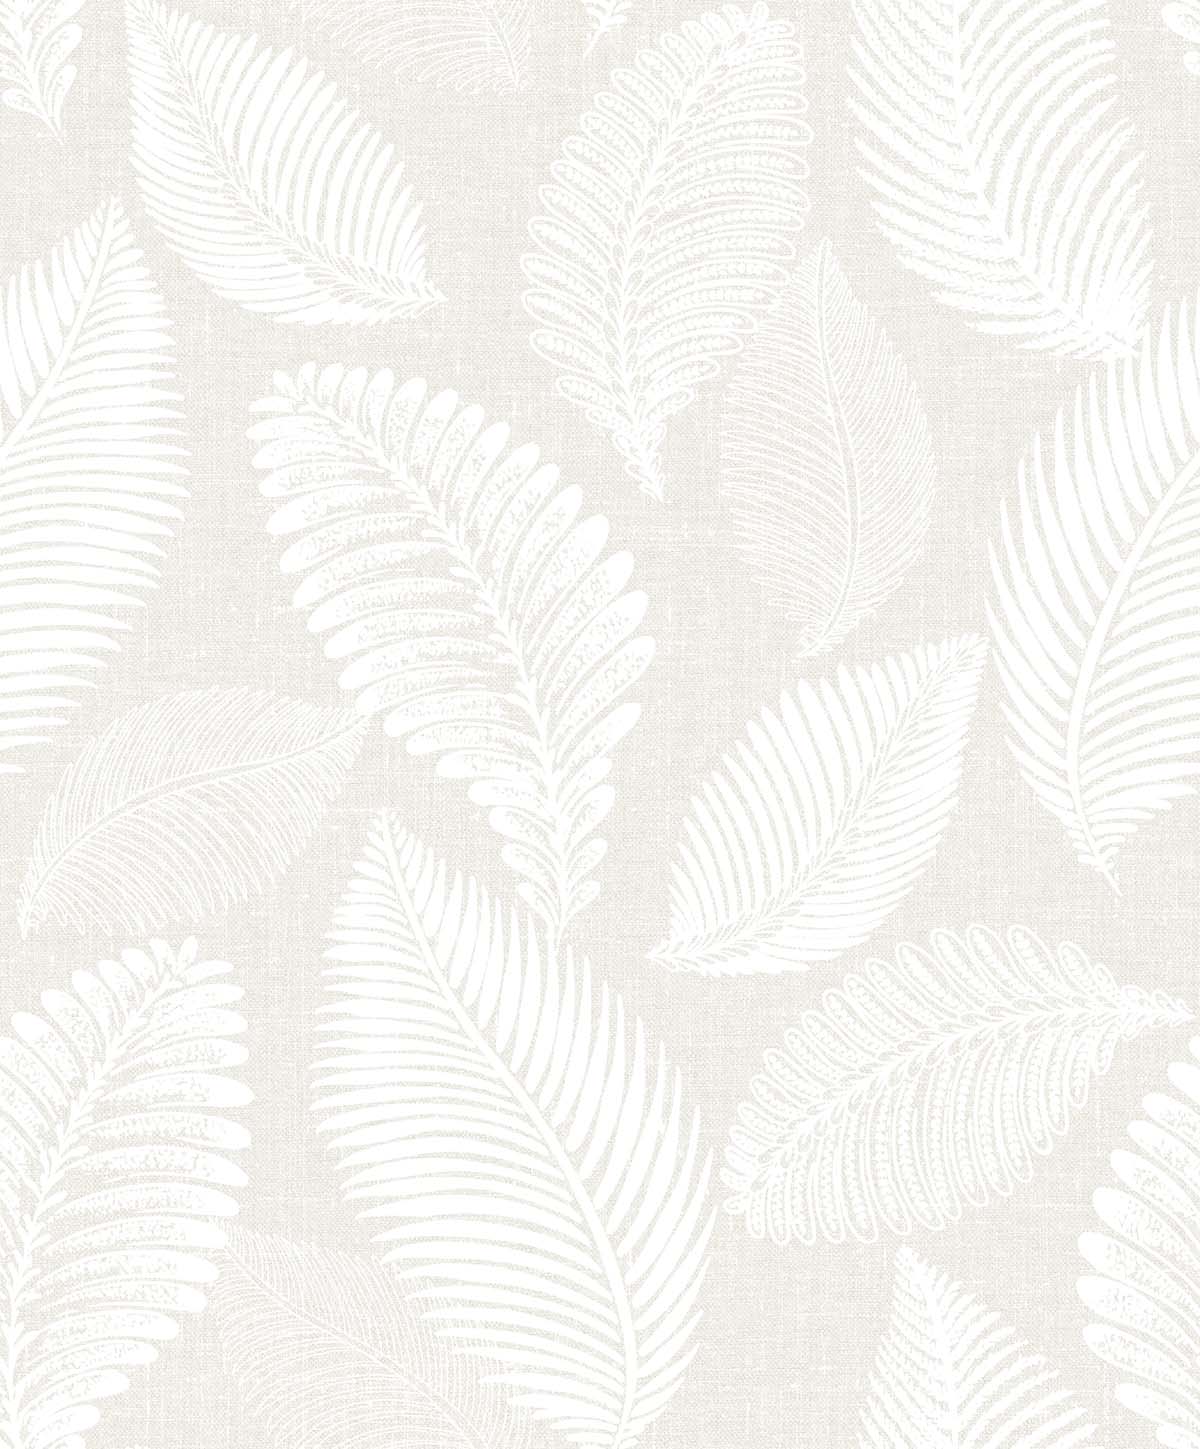 EW10000 | Tossed Leaves, Beige - Seabrook Designs Wallpaper